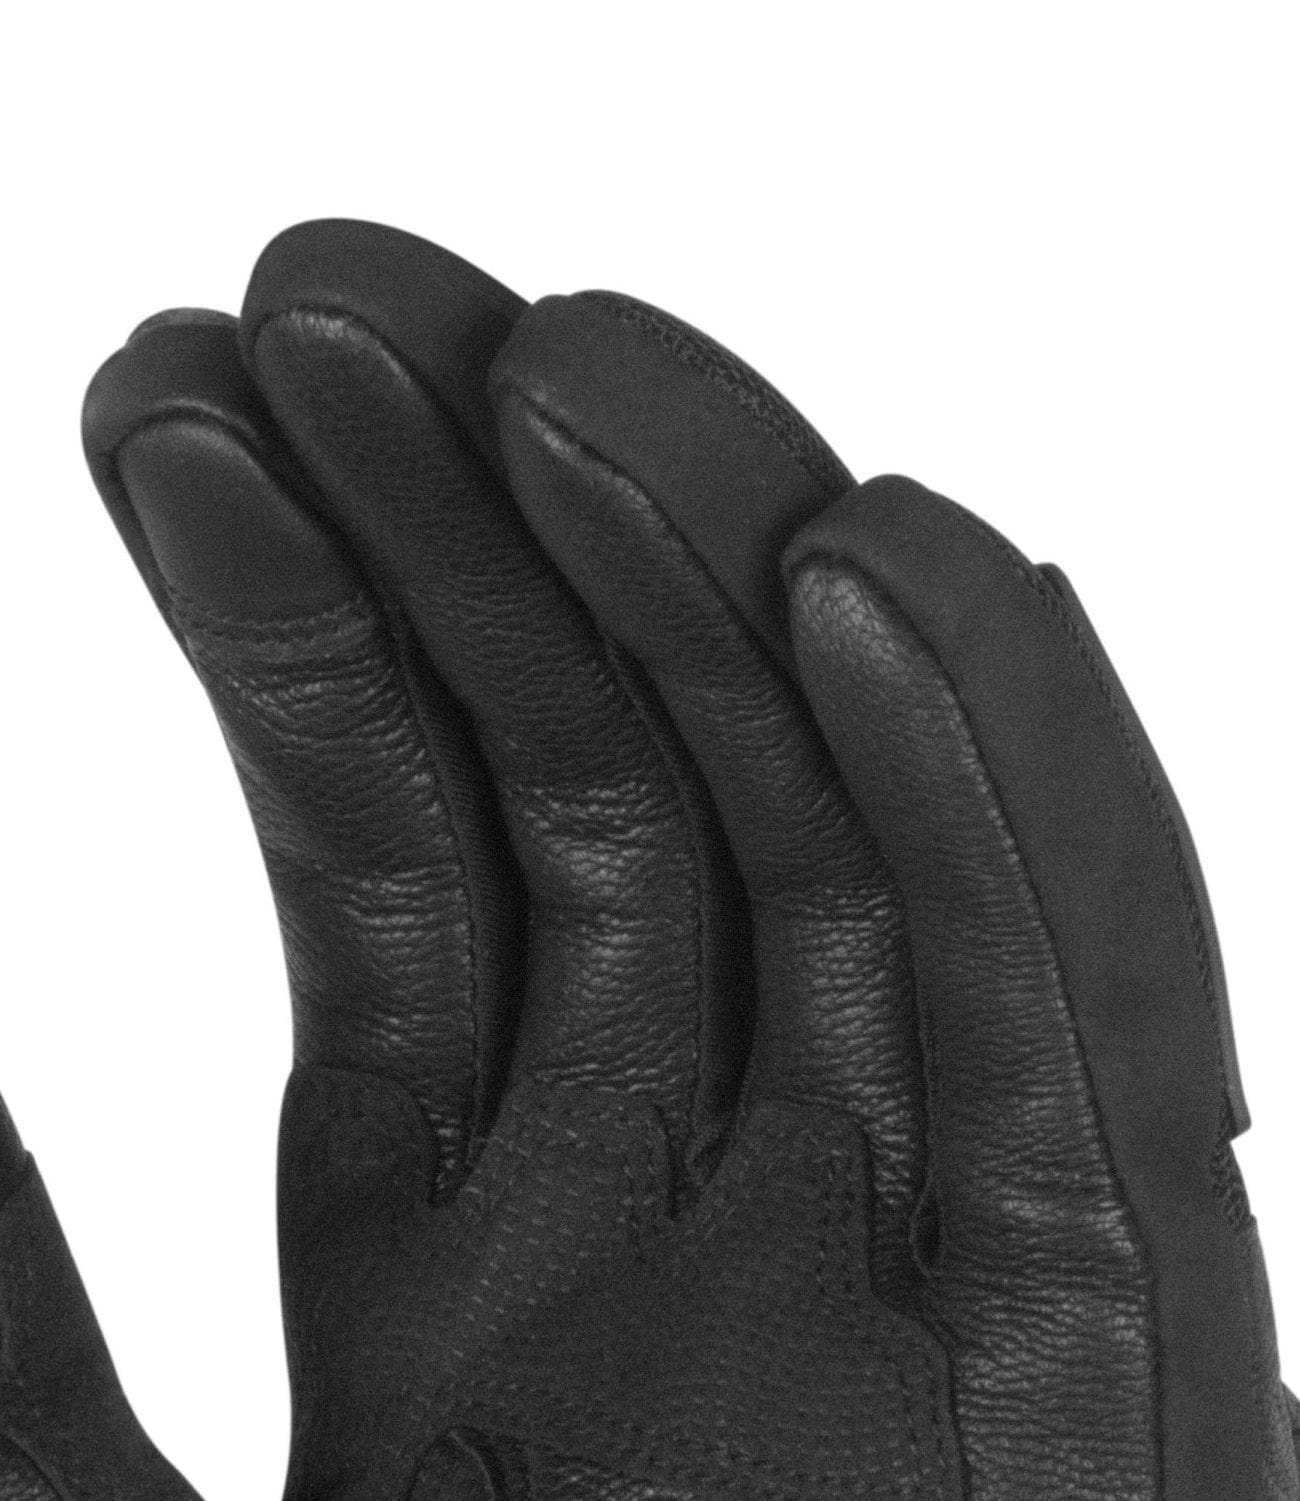 Rynox Urban X Gloves - Destination Moto